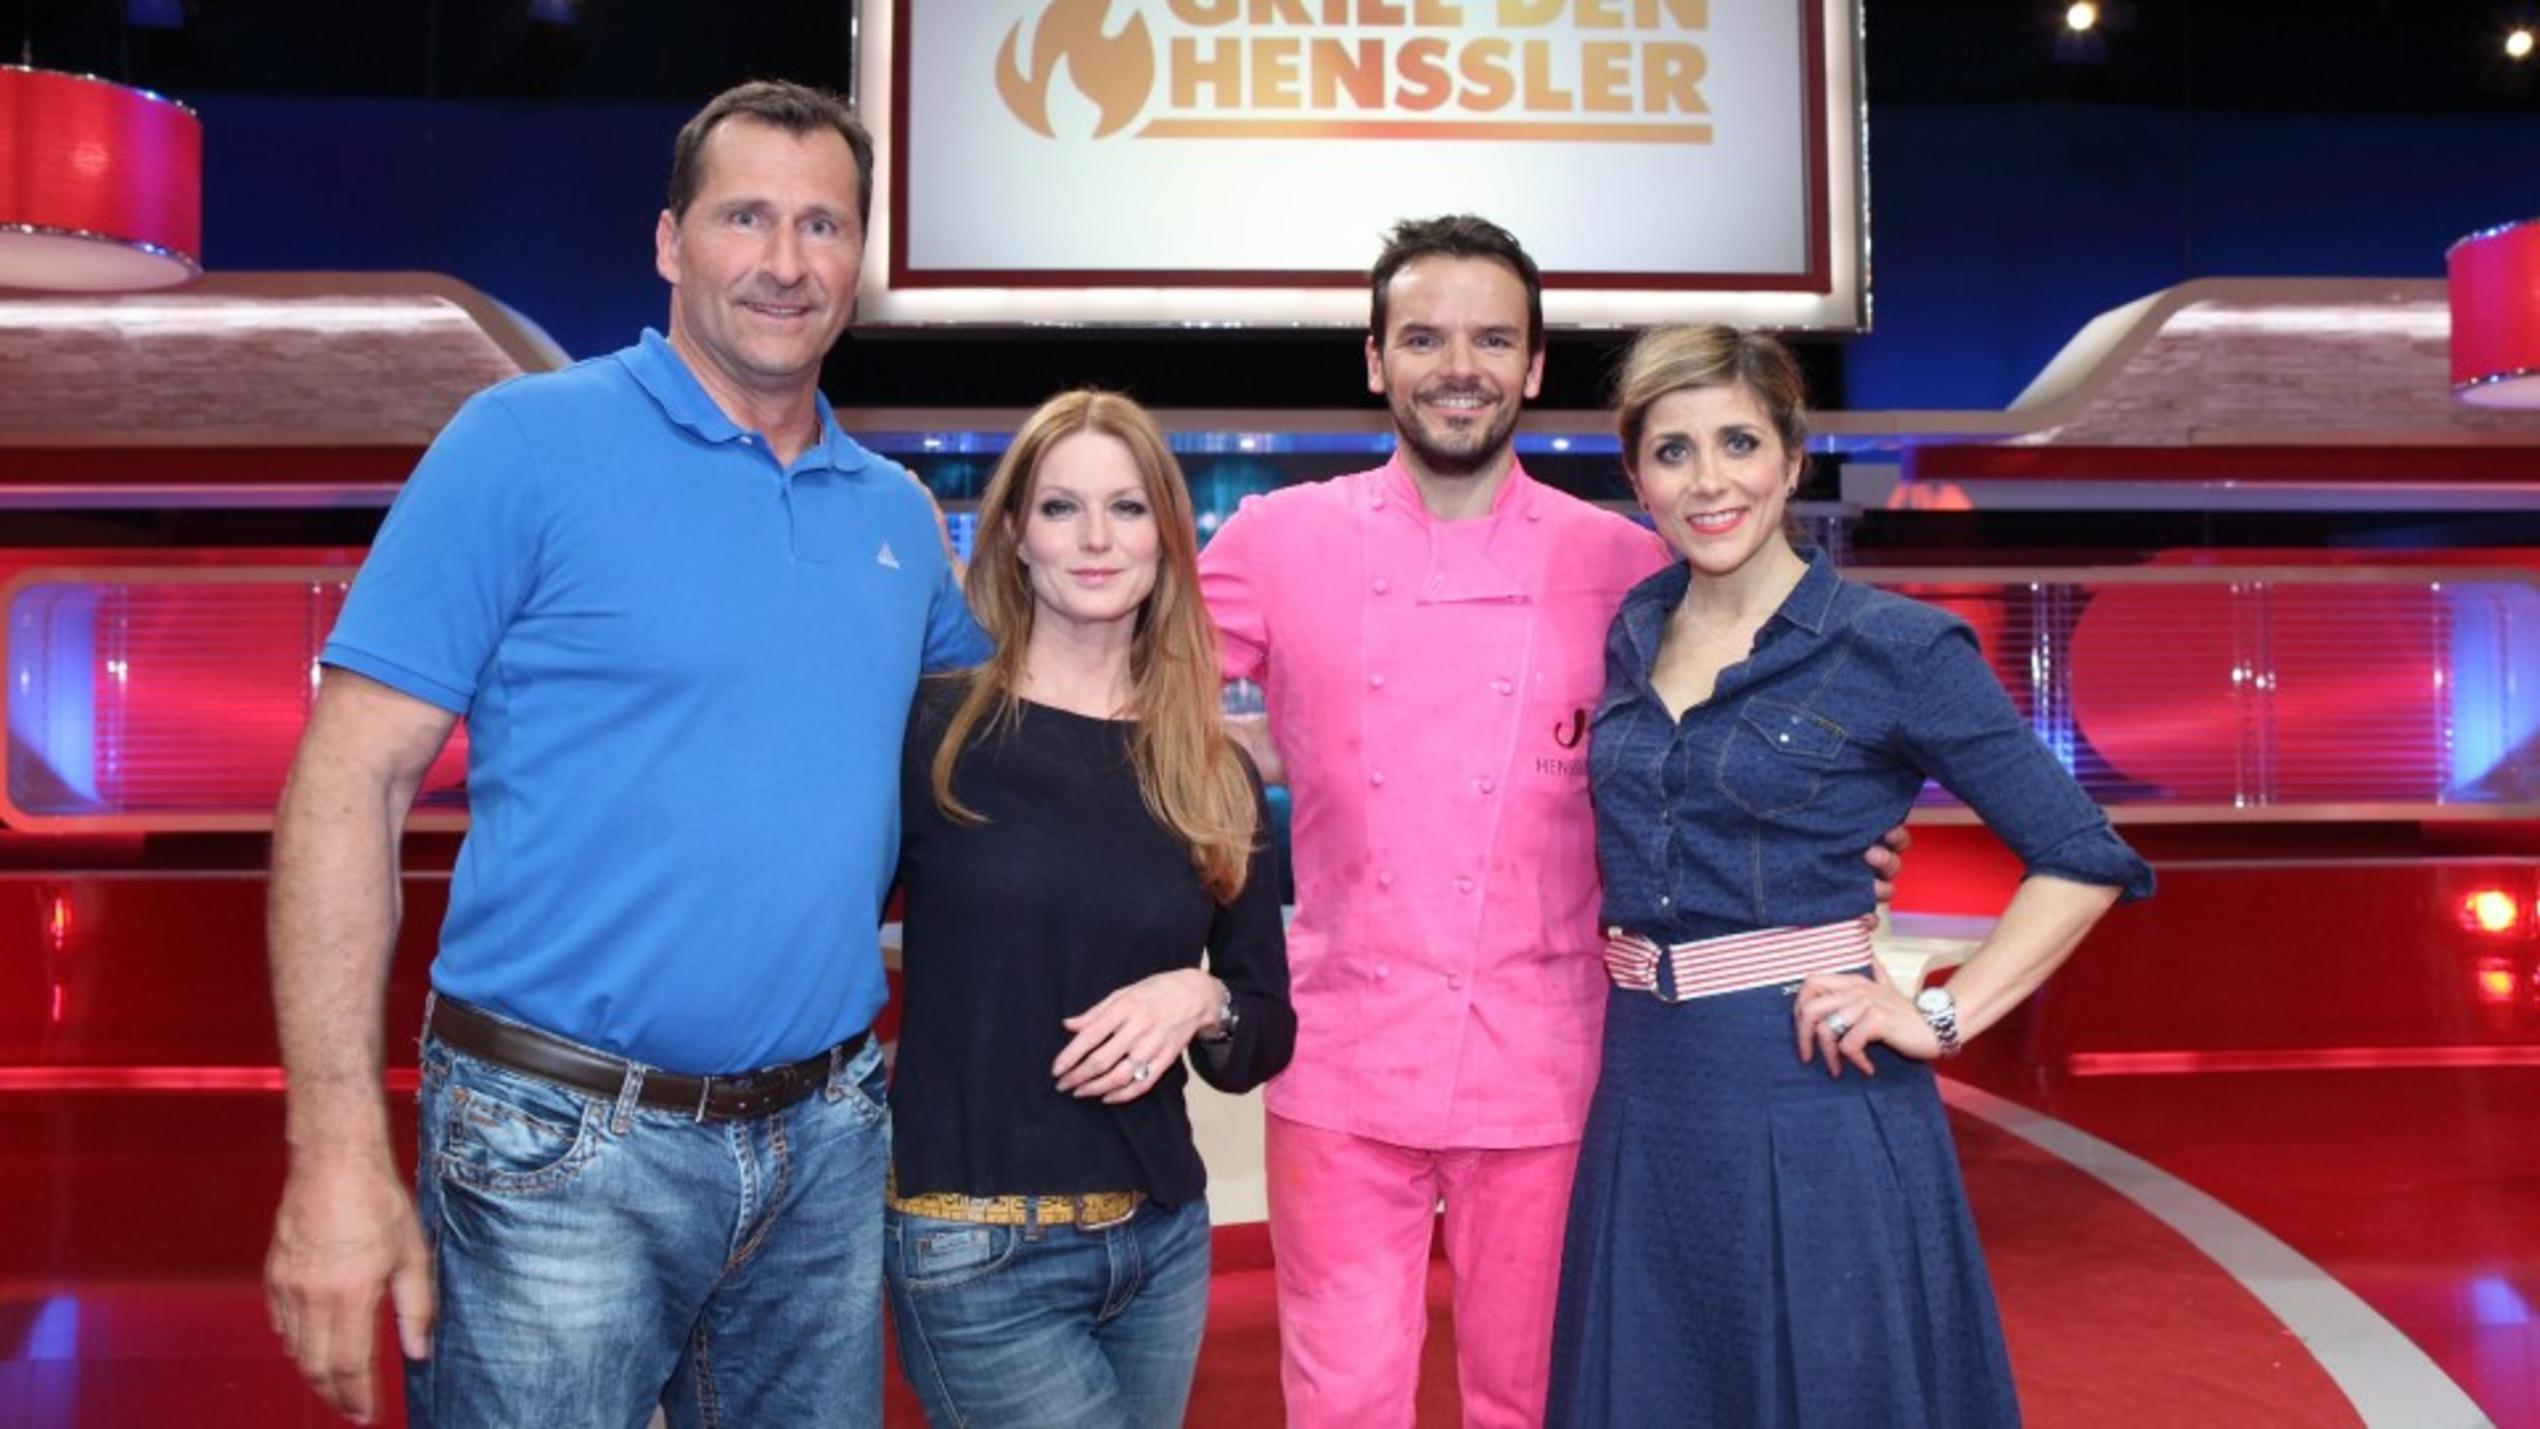 Grill den Henssler: Steffen Henssler löst seine Wette ein und kommt in pinkfarbenen Klamotten